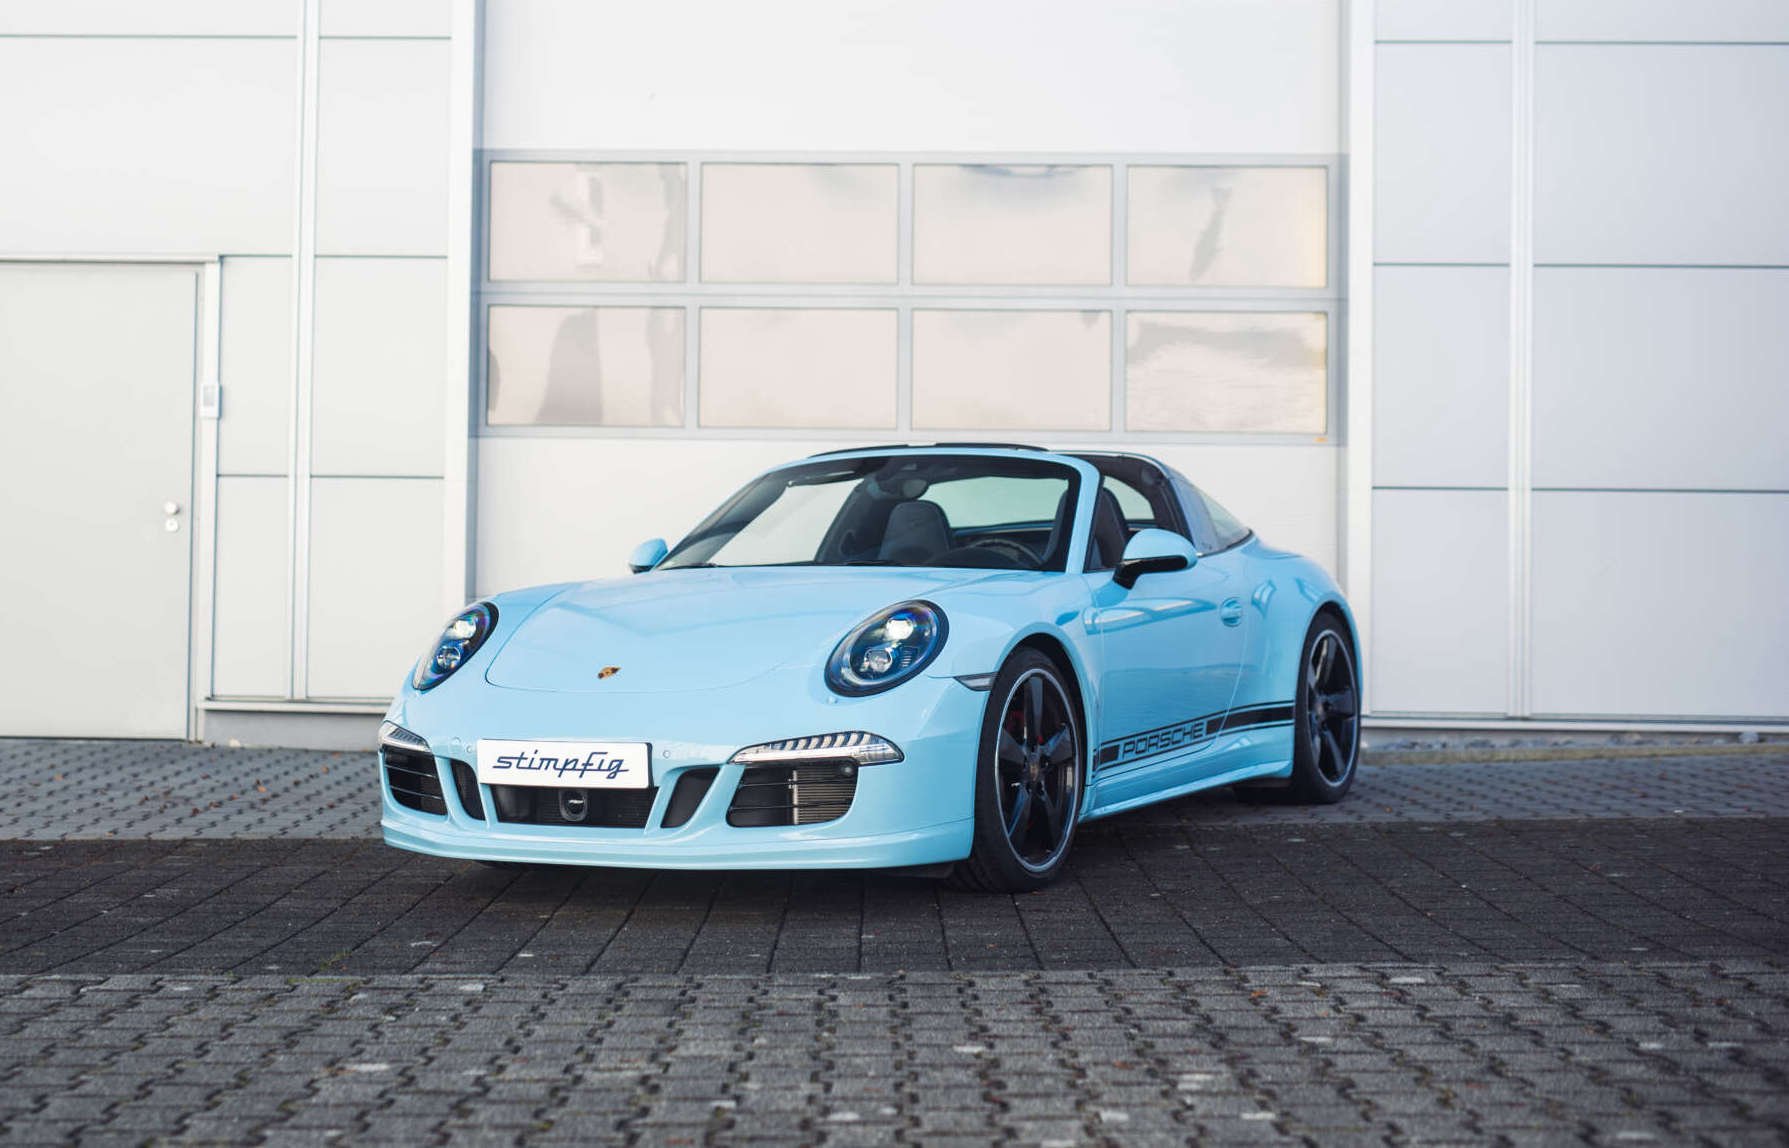 2015 Porsche 911 kaufen gebraucht - Baujahr 2015